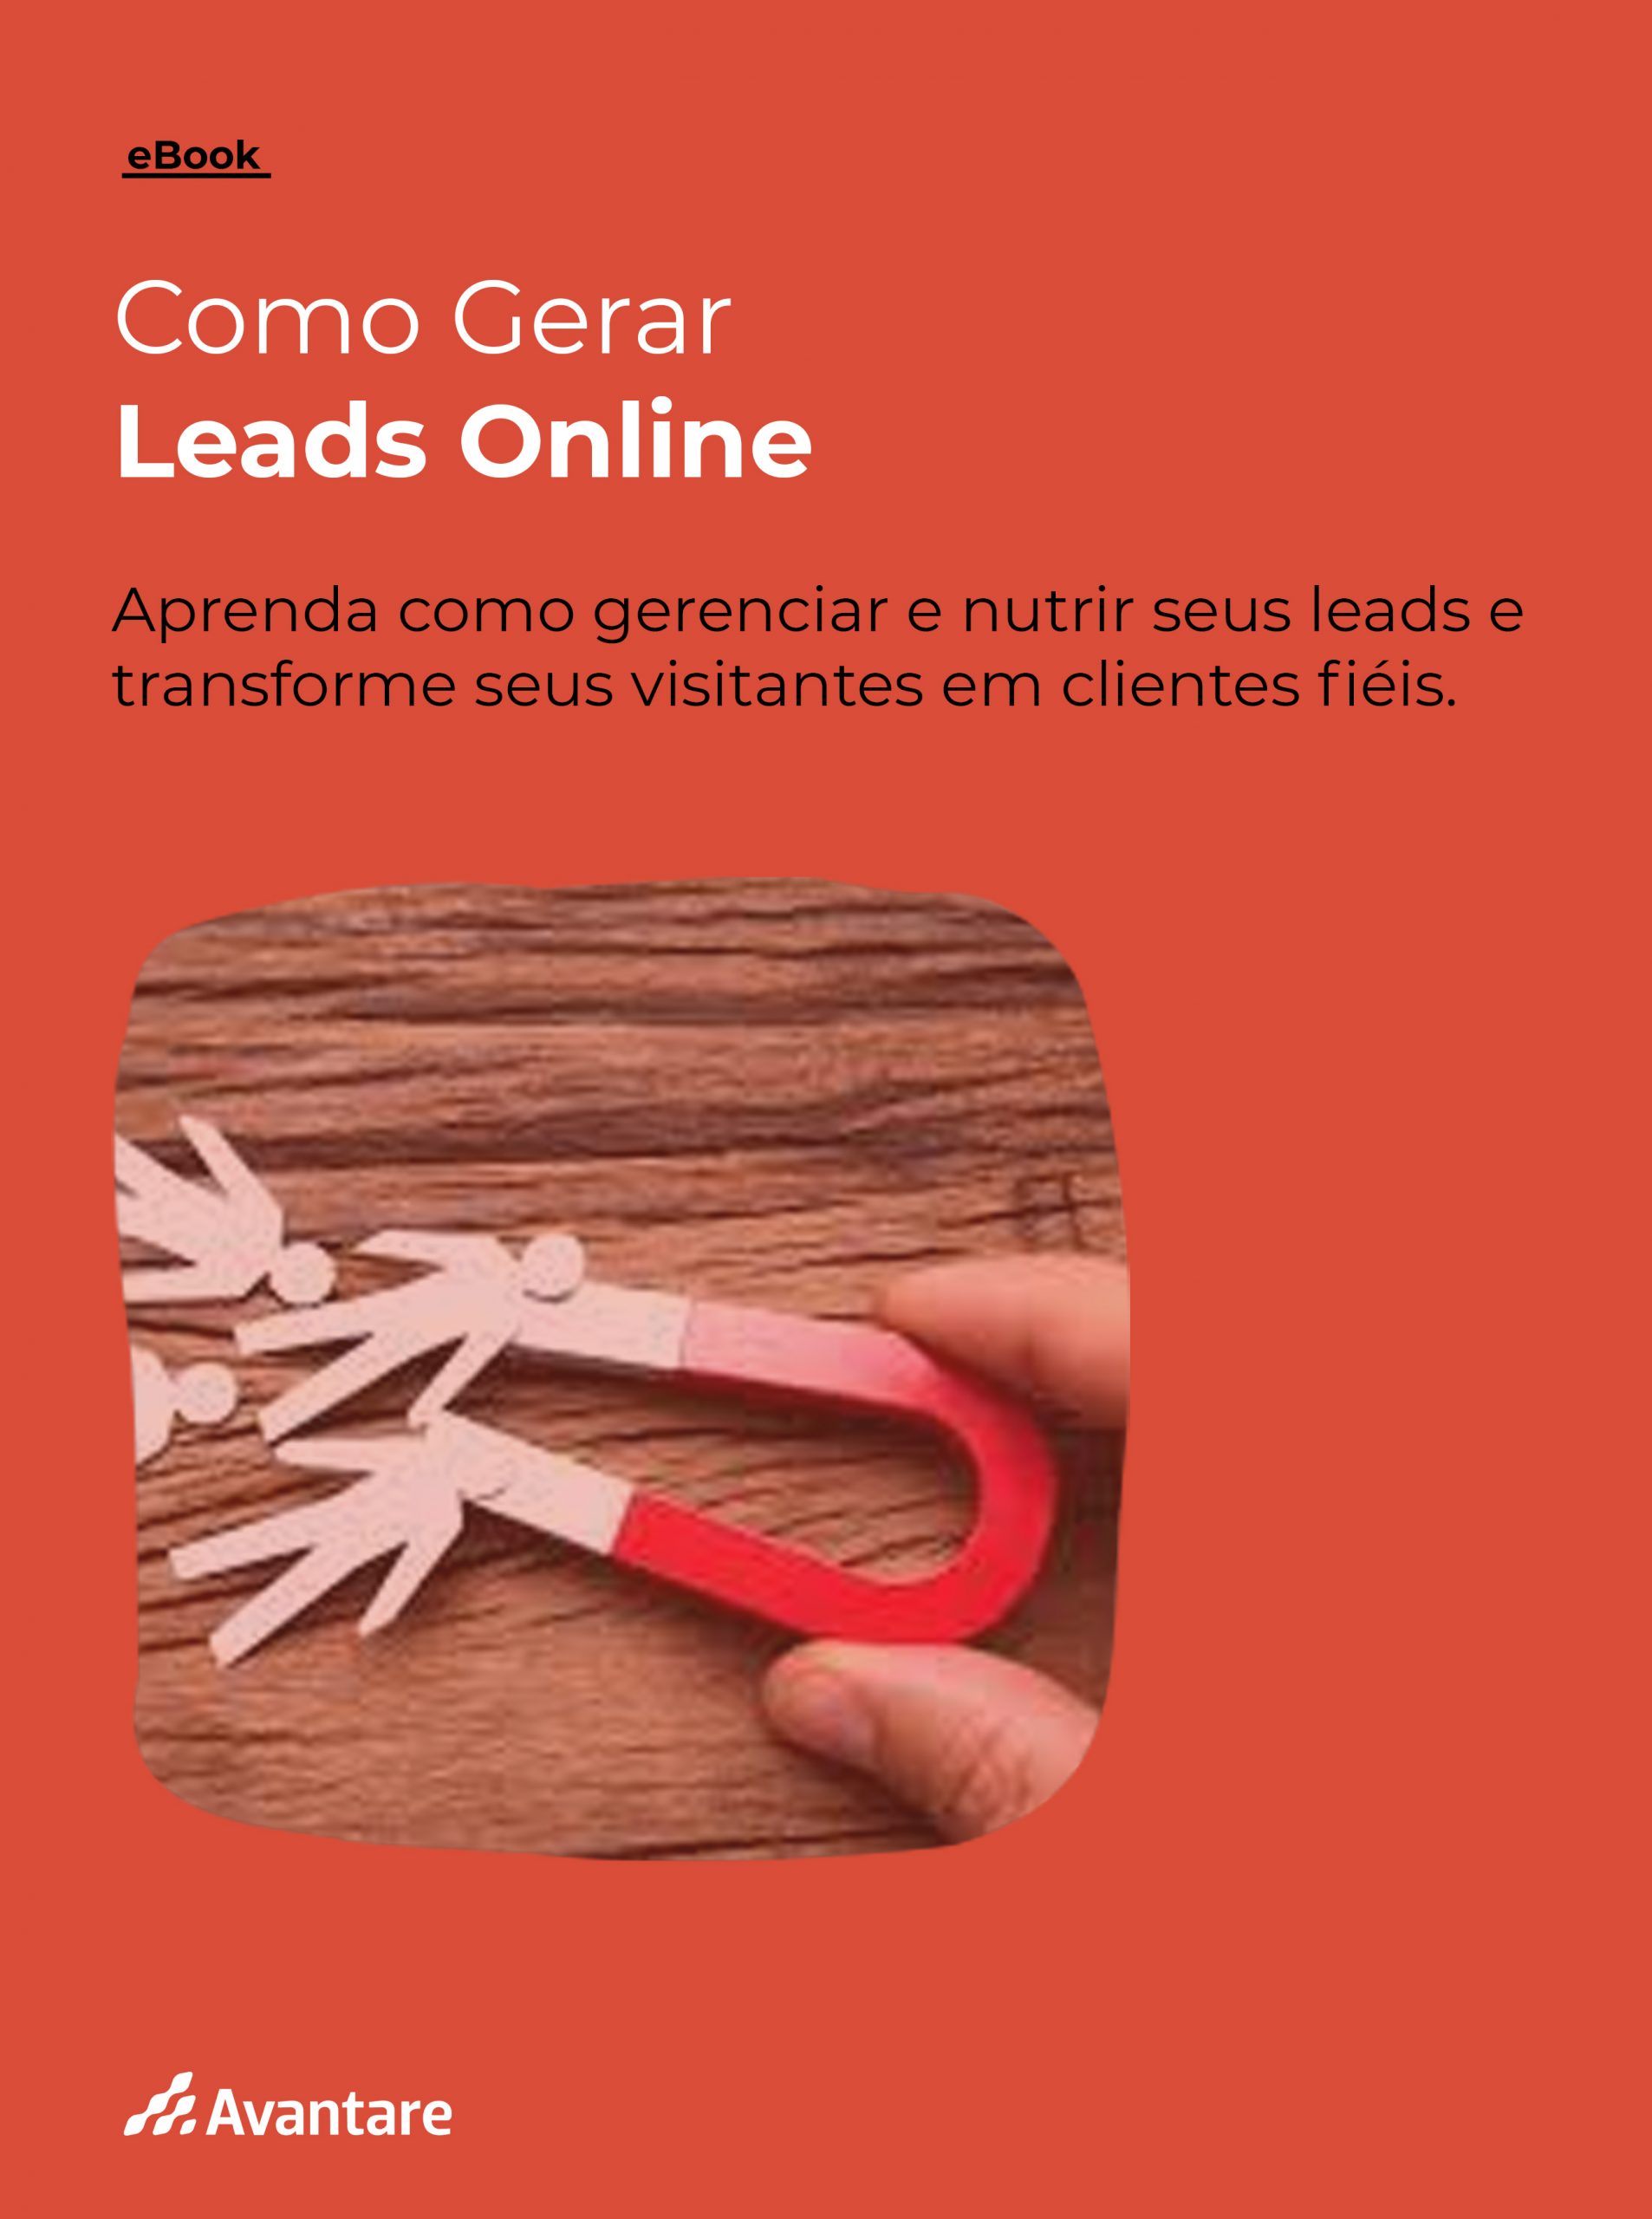 E-book_capa_Como_gerar_leads_online